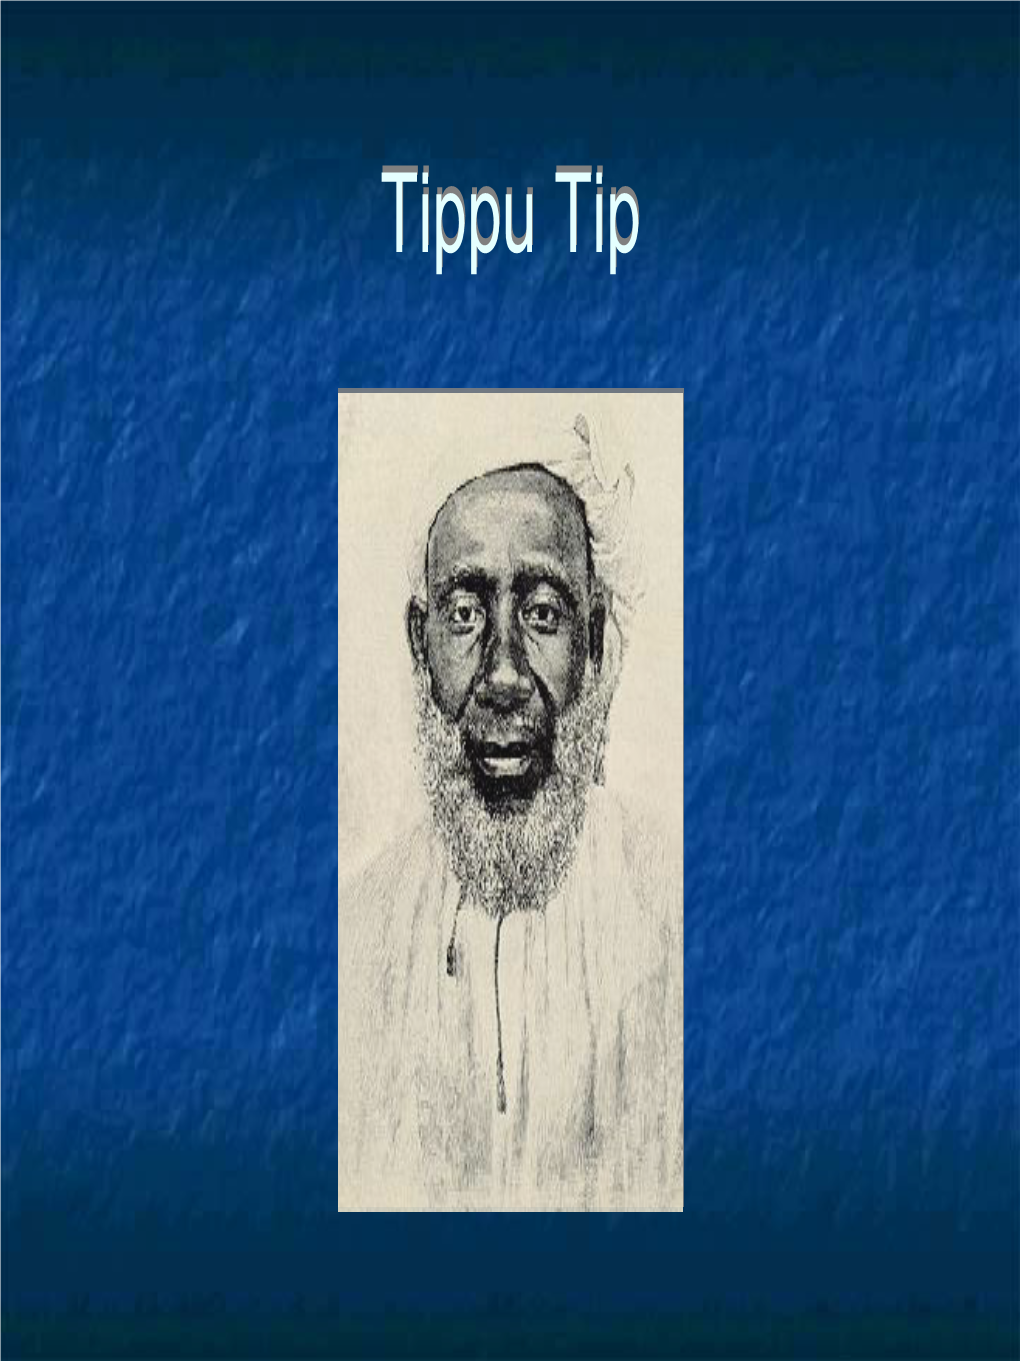 Tippu Tip Overview